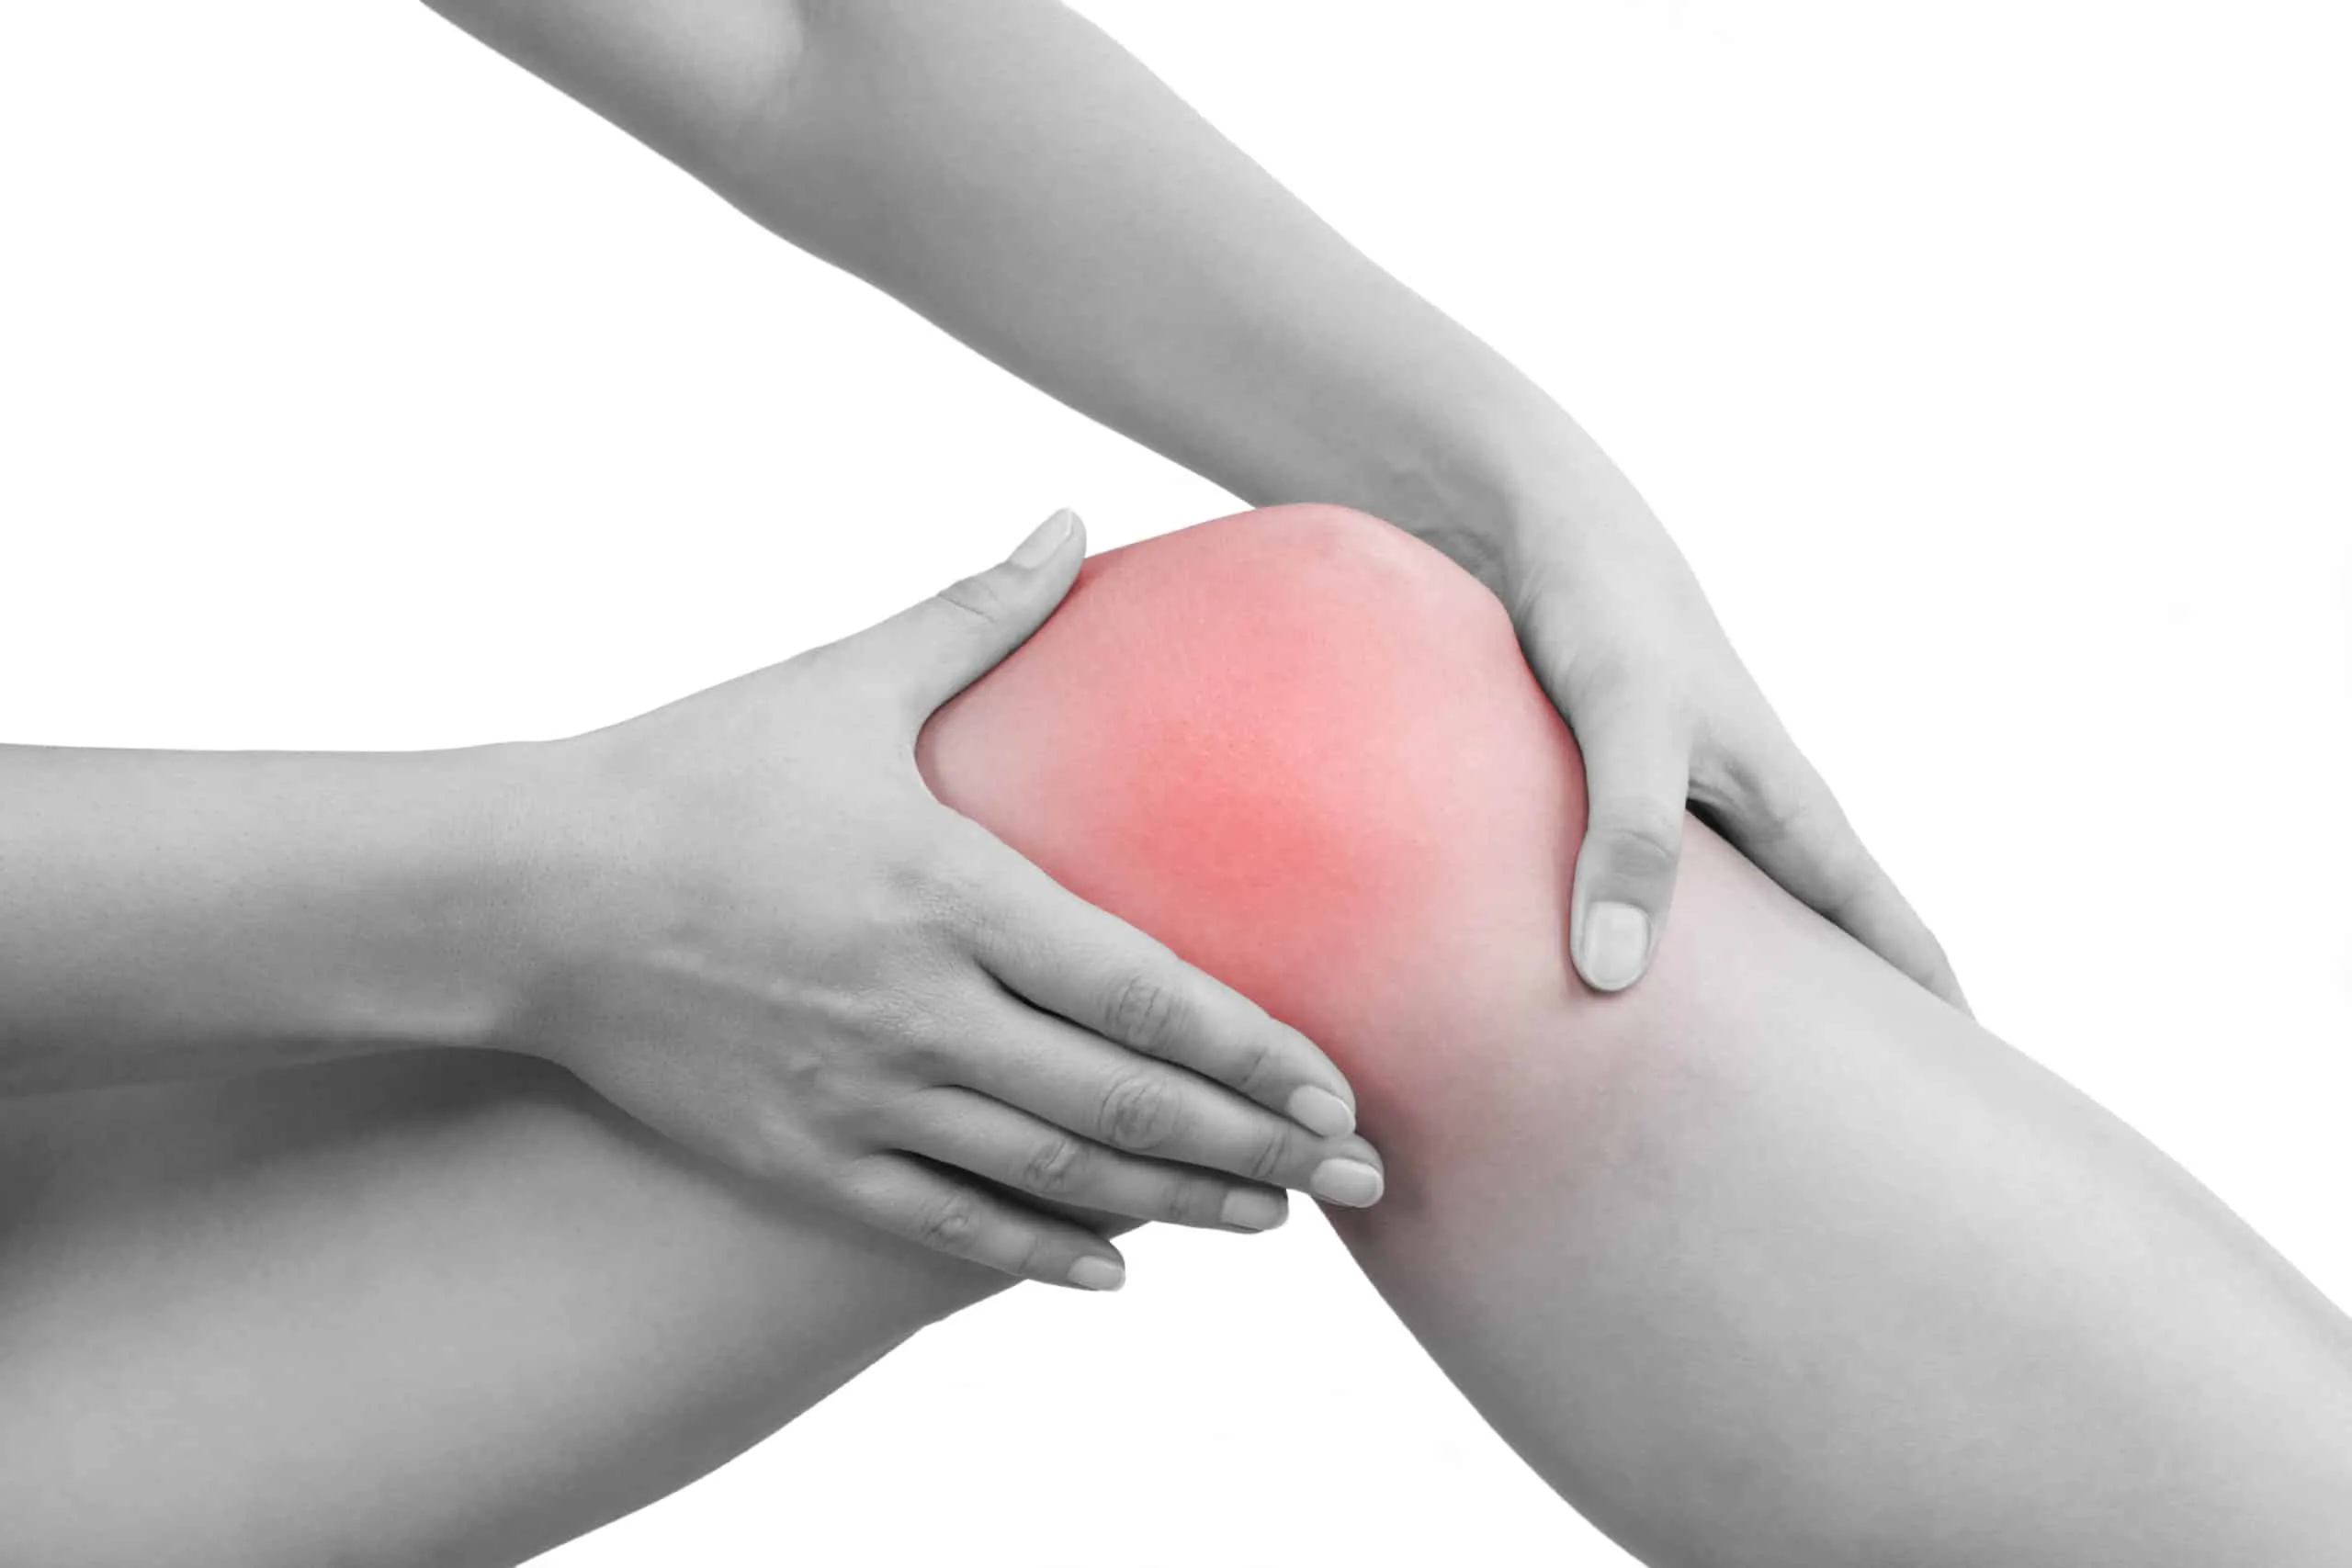 Виды и степени повреждений связки колена